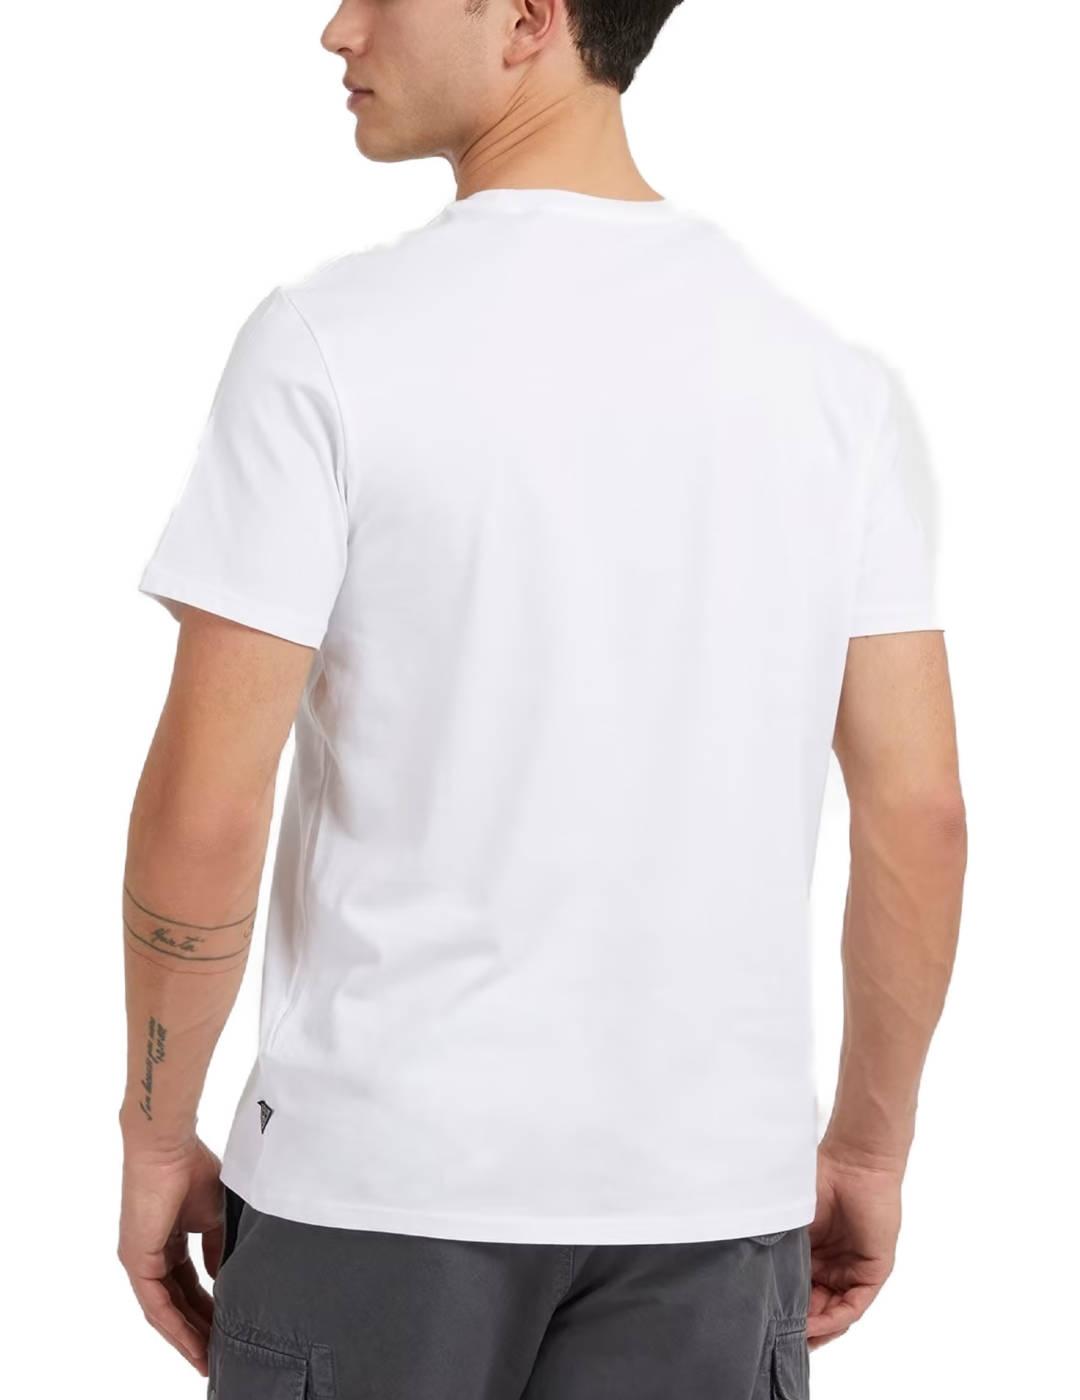 Camiseta Guess Graffiti blanca manga corta para hombre